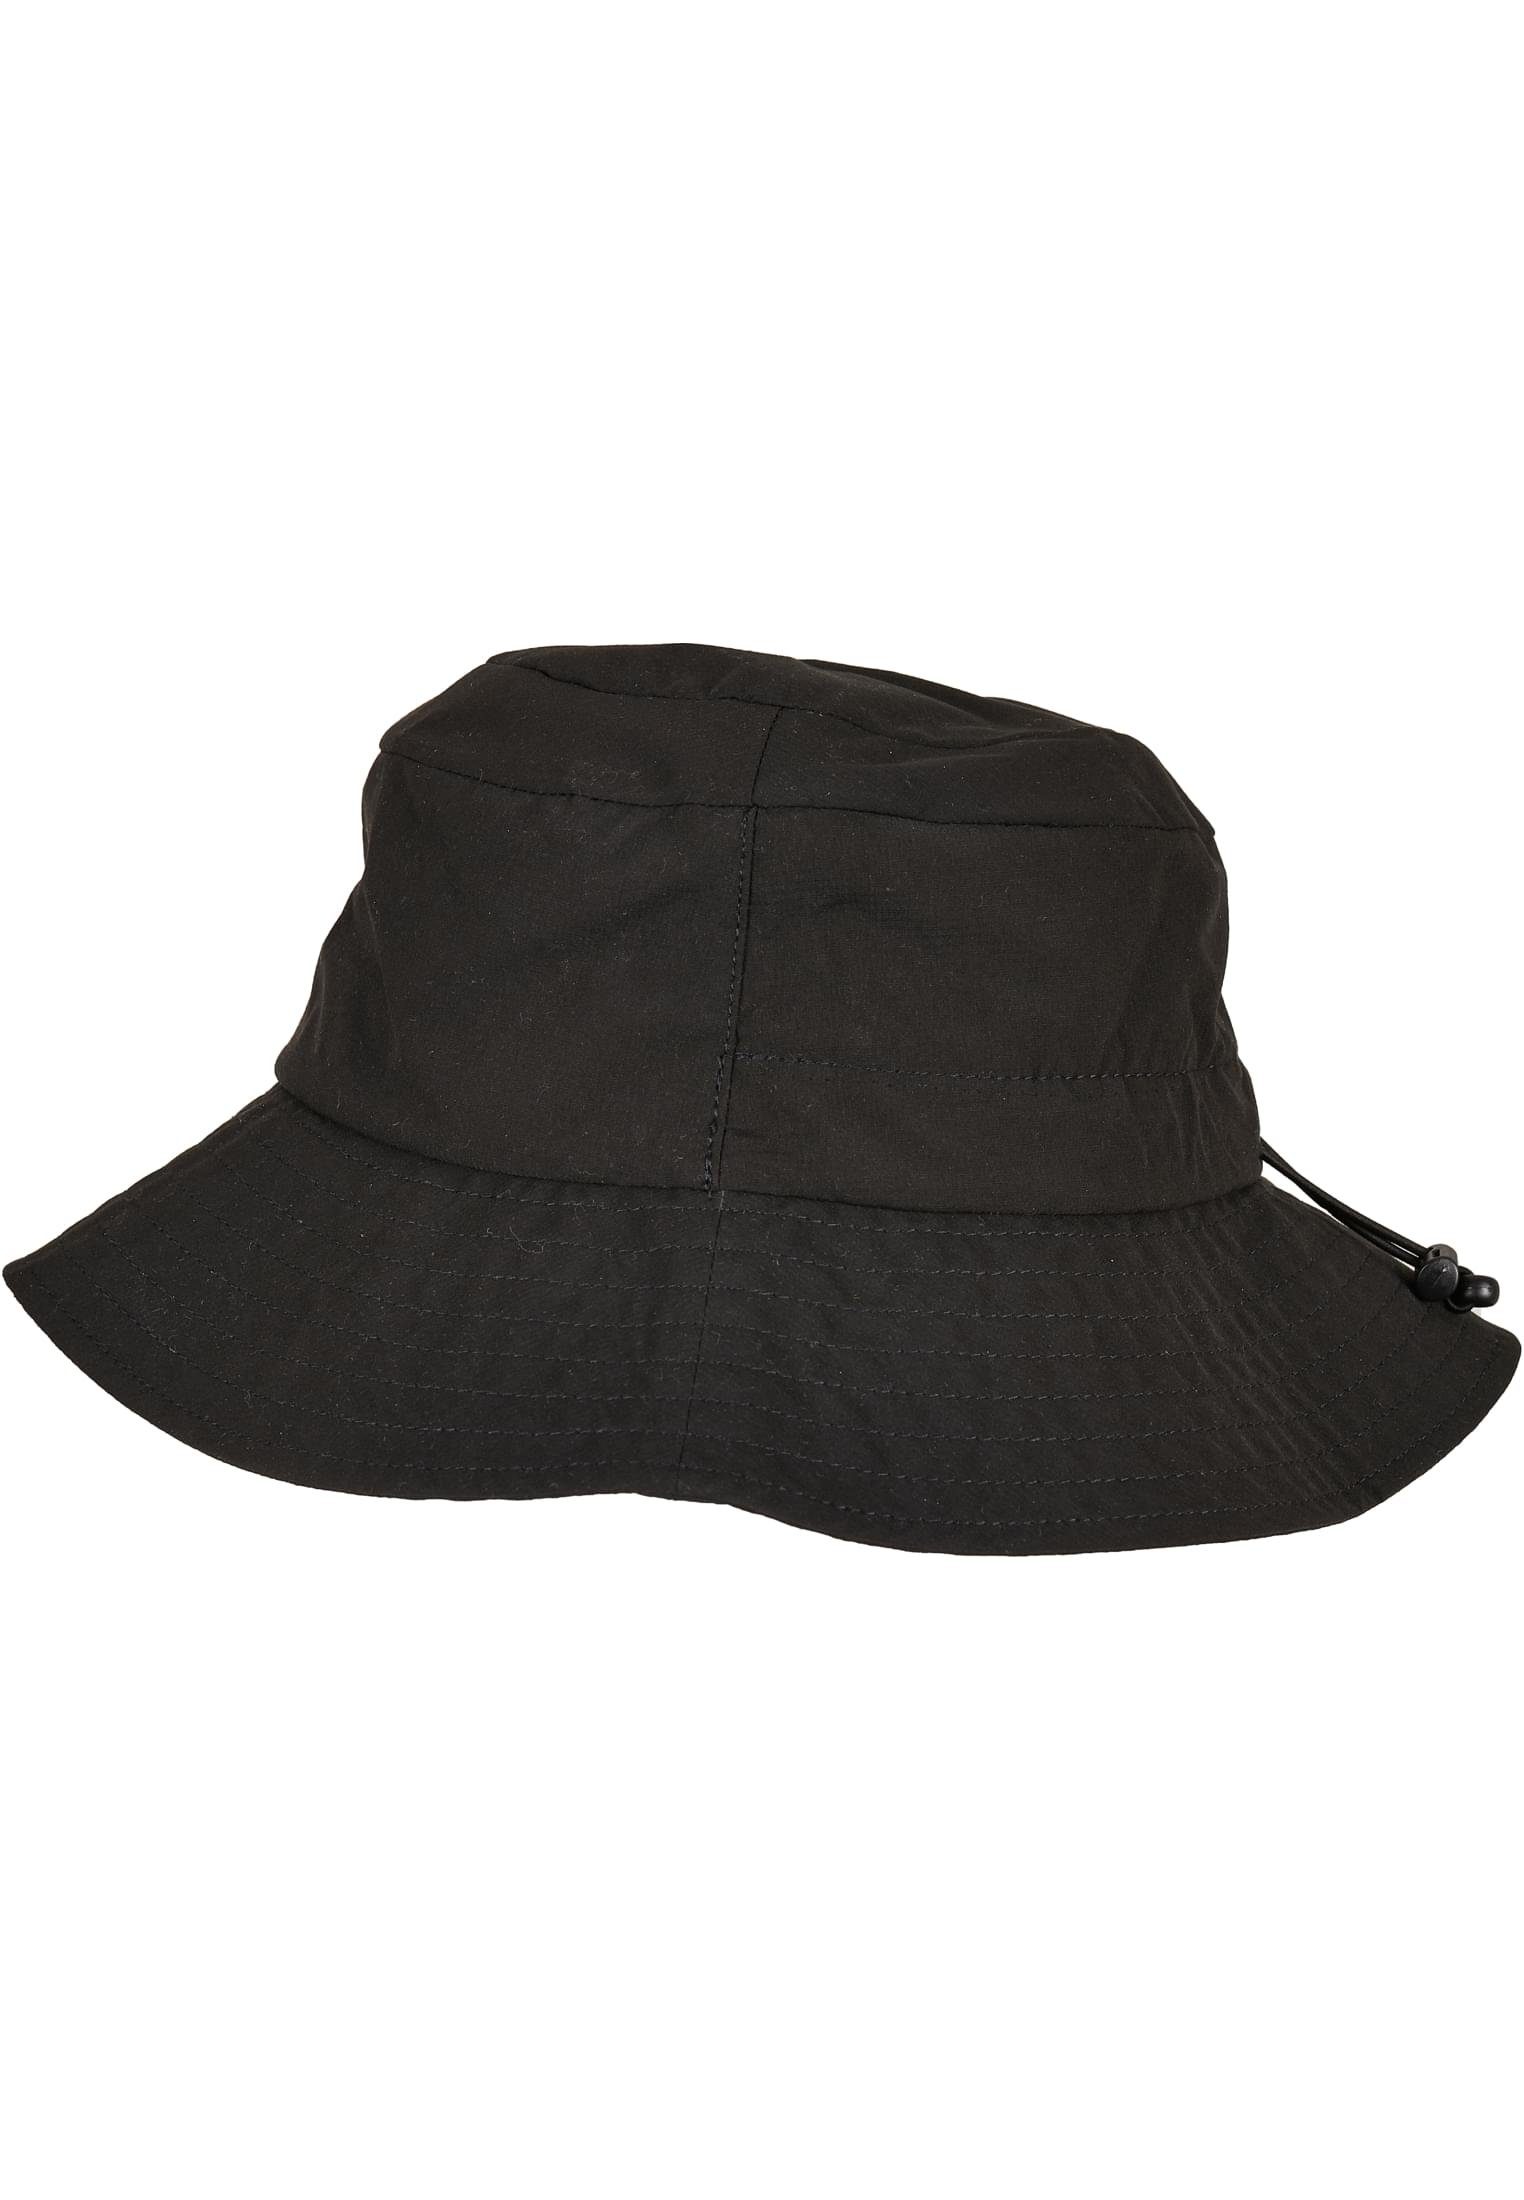 Accessoires Elastic Flex Cap Adjuster black Hat Flexfit Bucket